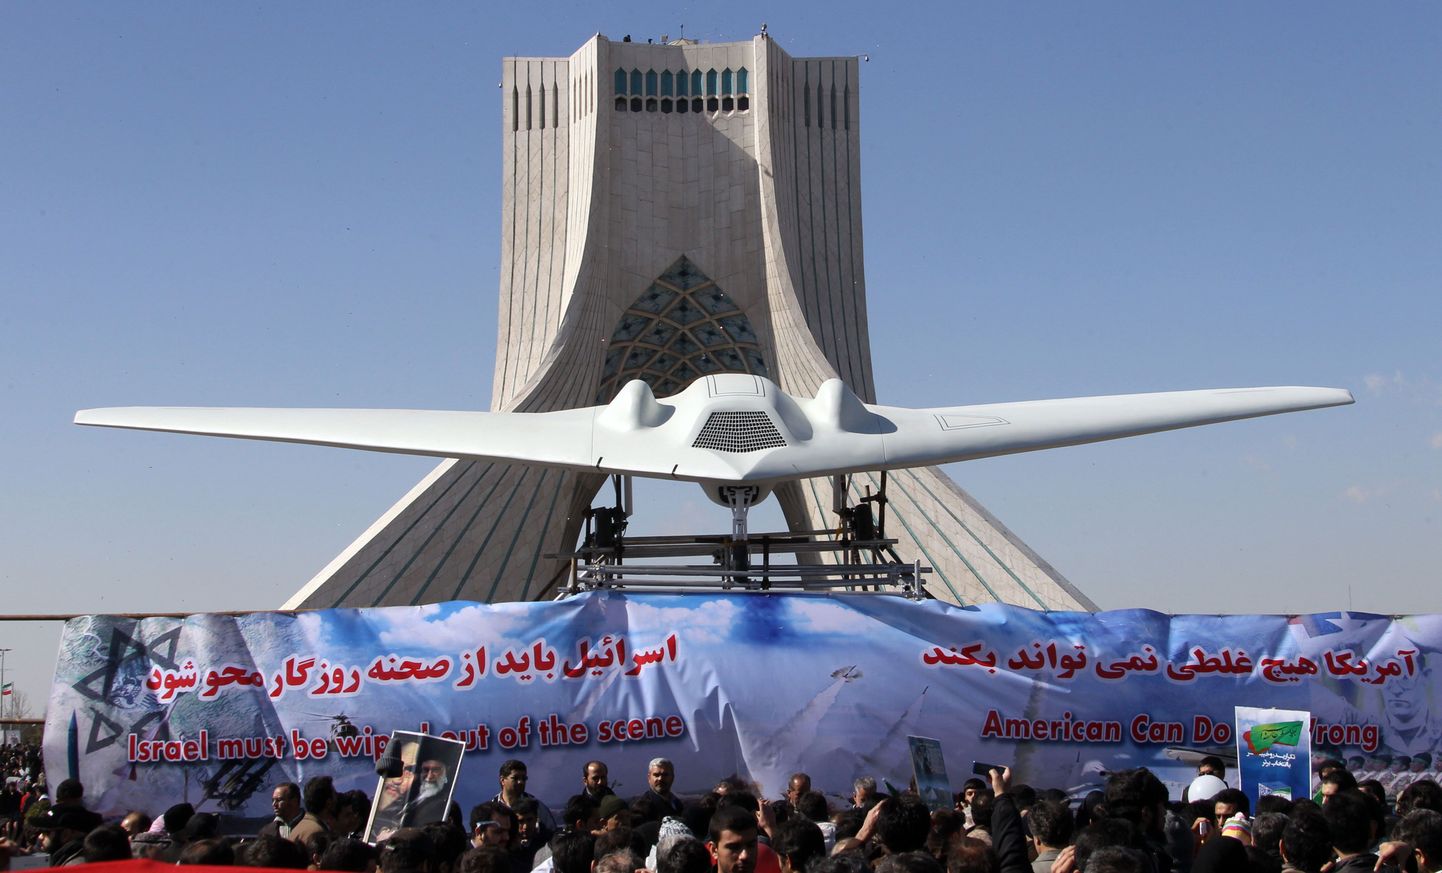 USA drooni koopia Iraani pealinnas Teherianis 11. veebruaril.